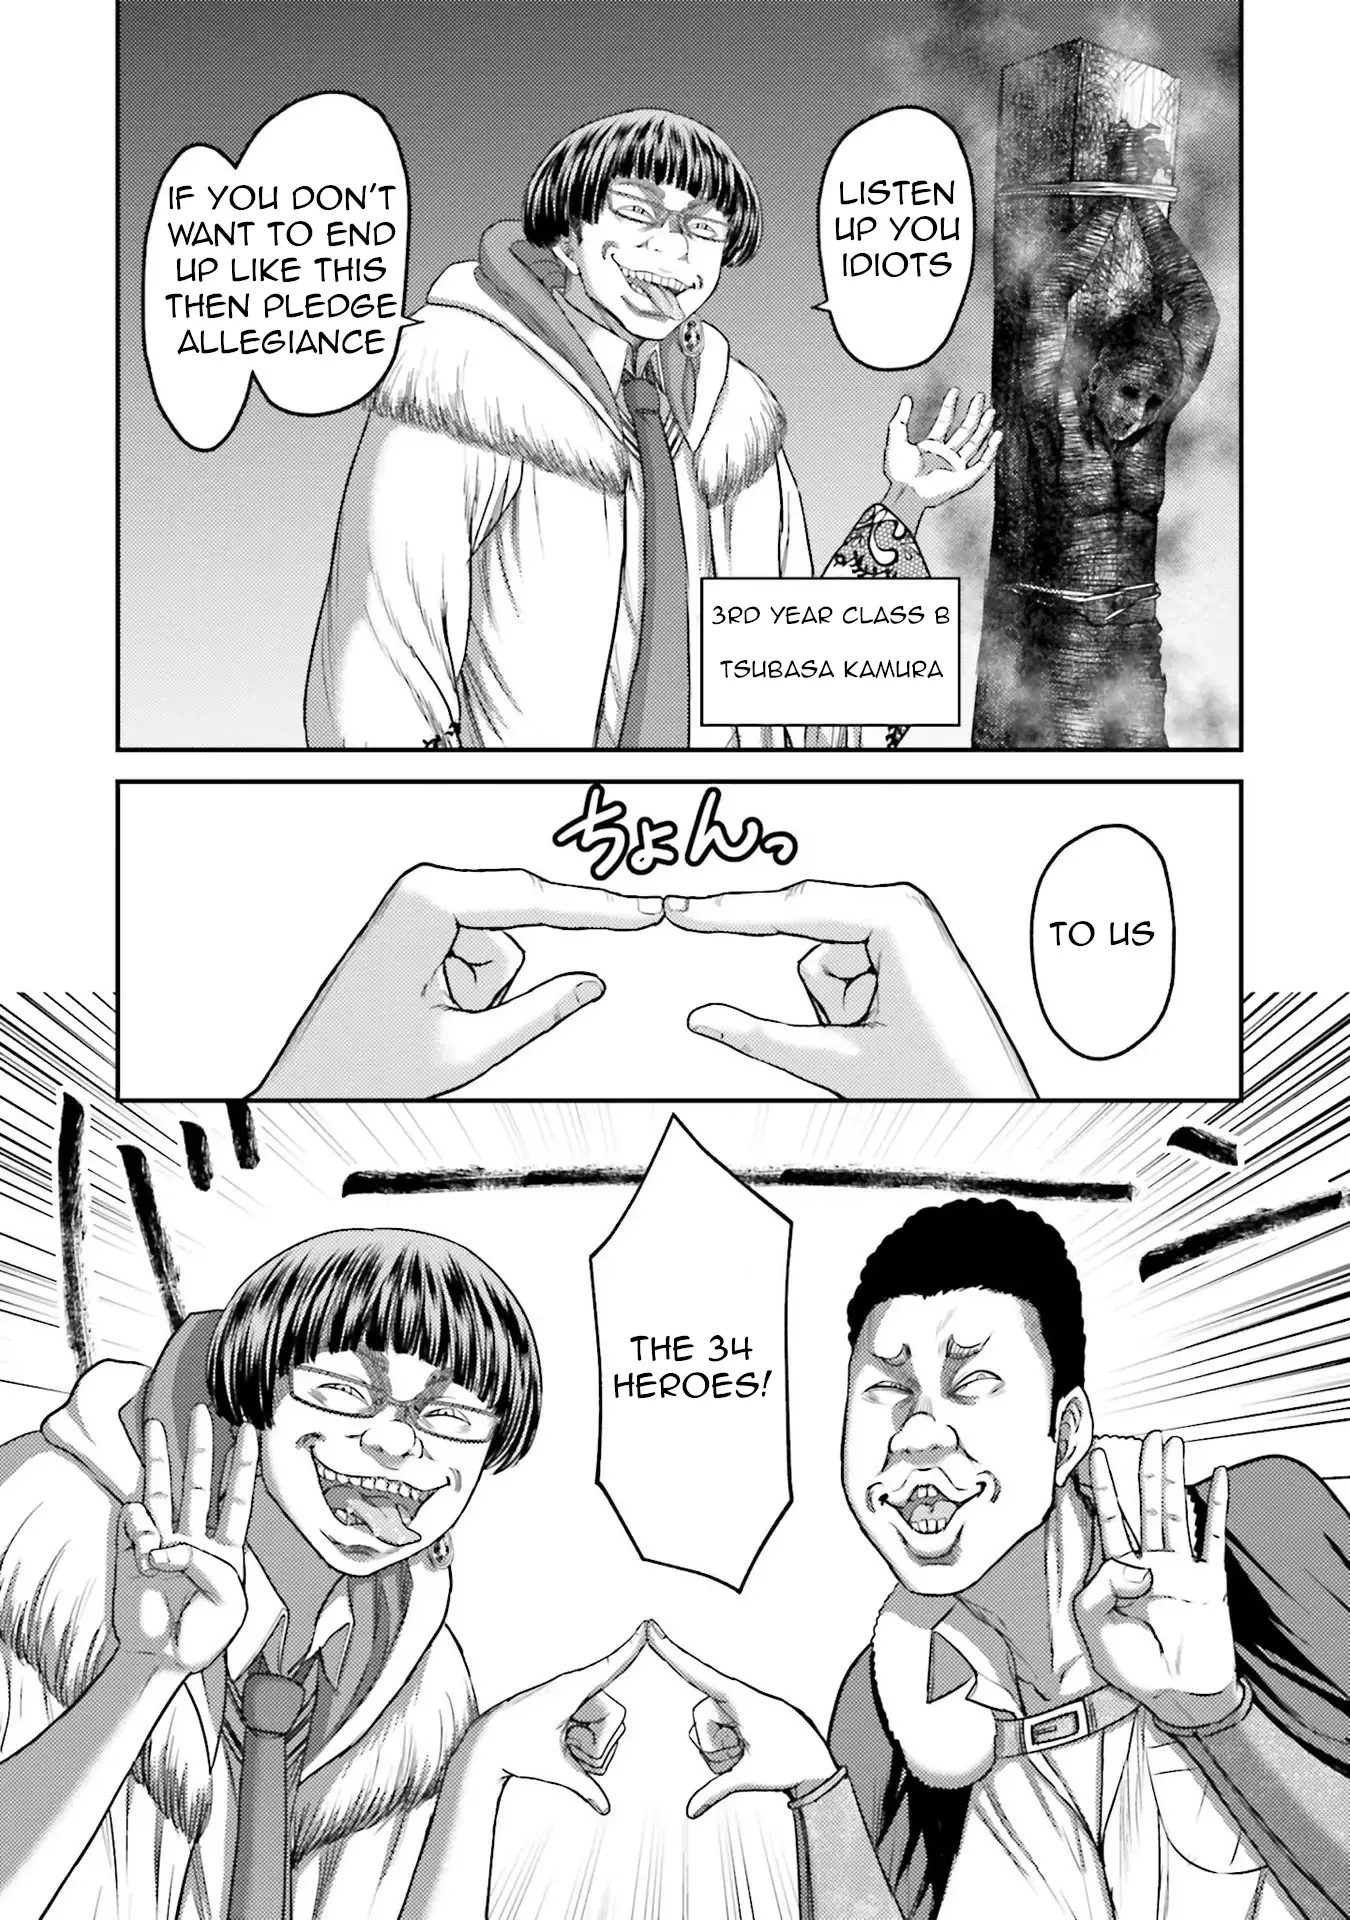 Buta No Fukushuu - 3 page 6-ea4a4970